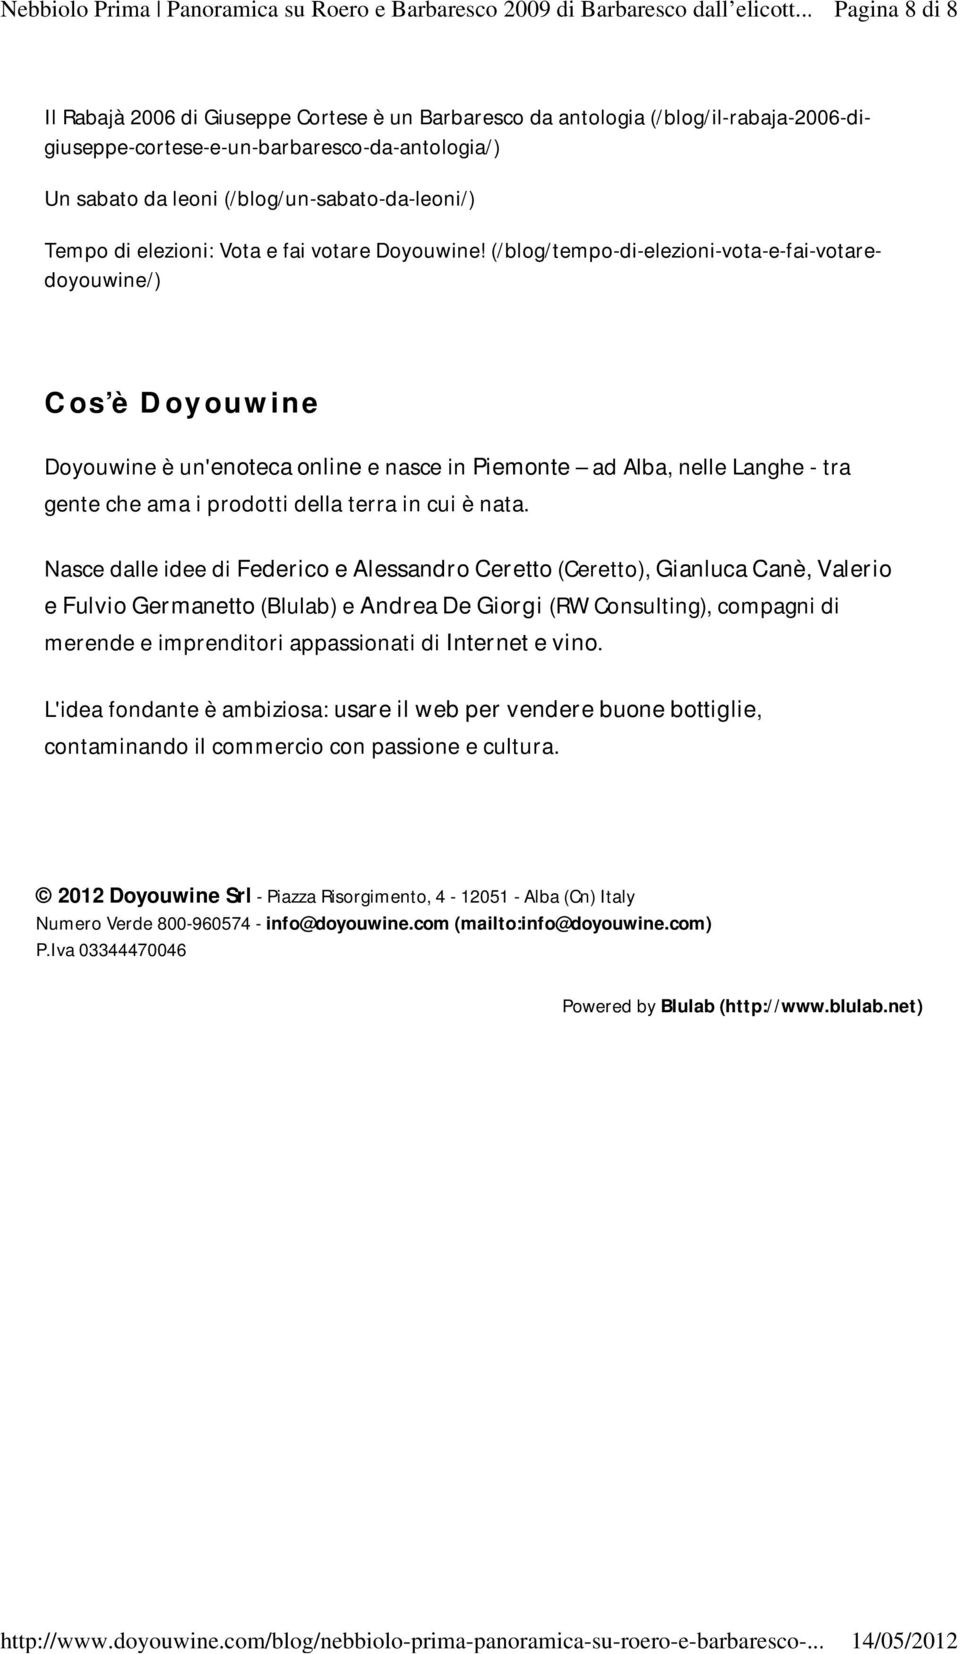 (/blog/tempo-di-elezioni-vota-e-fai-votaredoyouwine/) Cos è Doyouwine Doyouwine è un'enoteca online e nasce in Piemonte ad Alba, nelle Langhe - tra gente che ama i prodotti della terra in cui è nata.